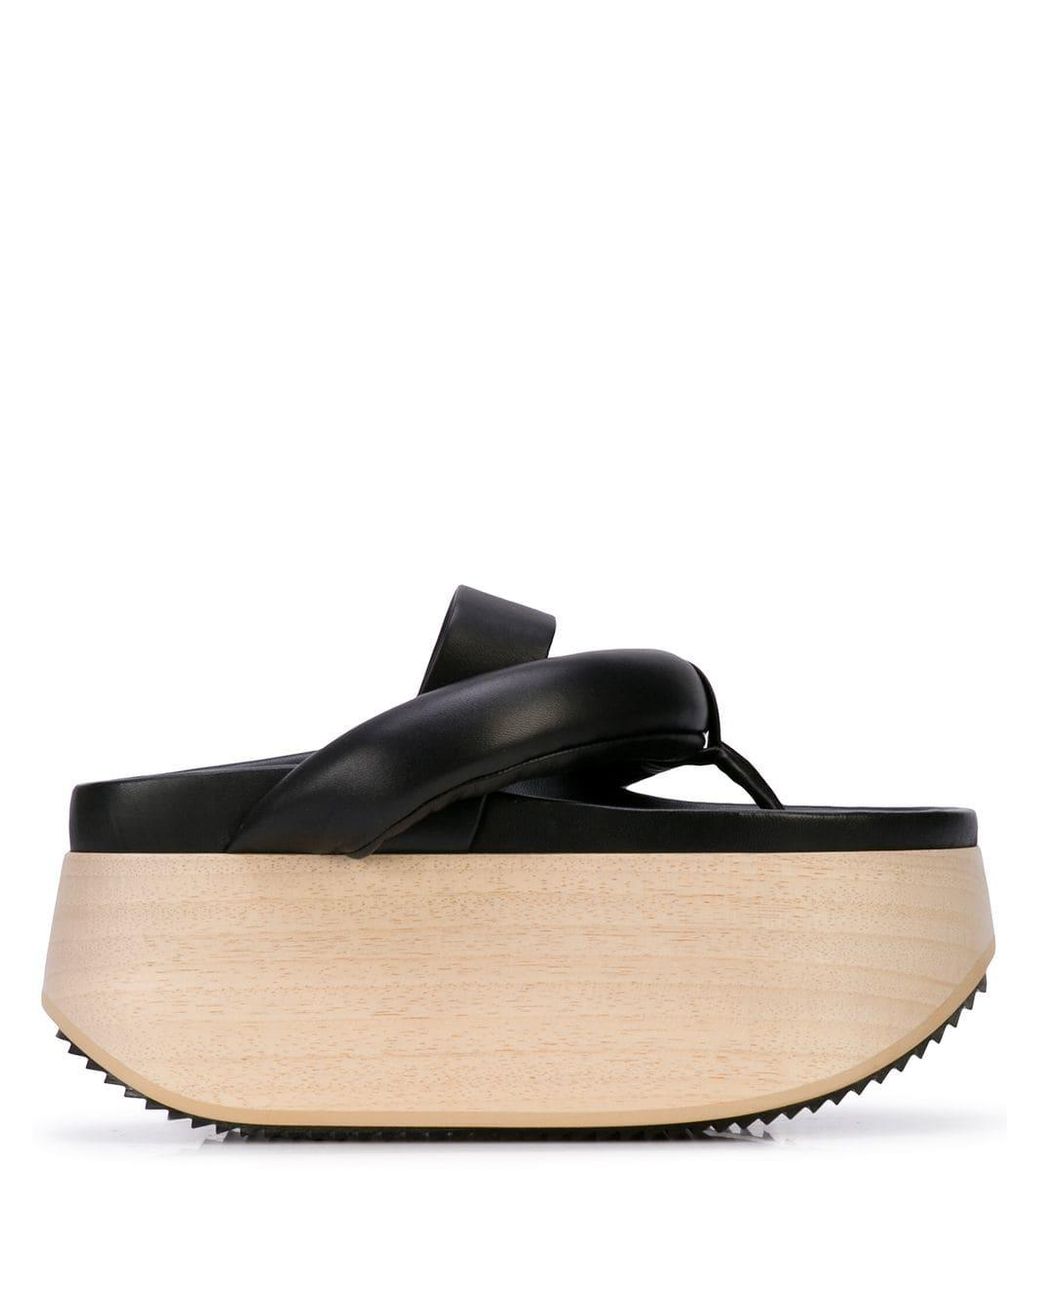 Jil Sander Leather Platform Sandals in Black | Lyst